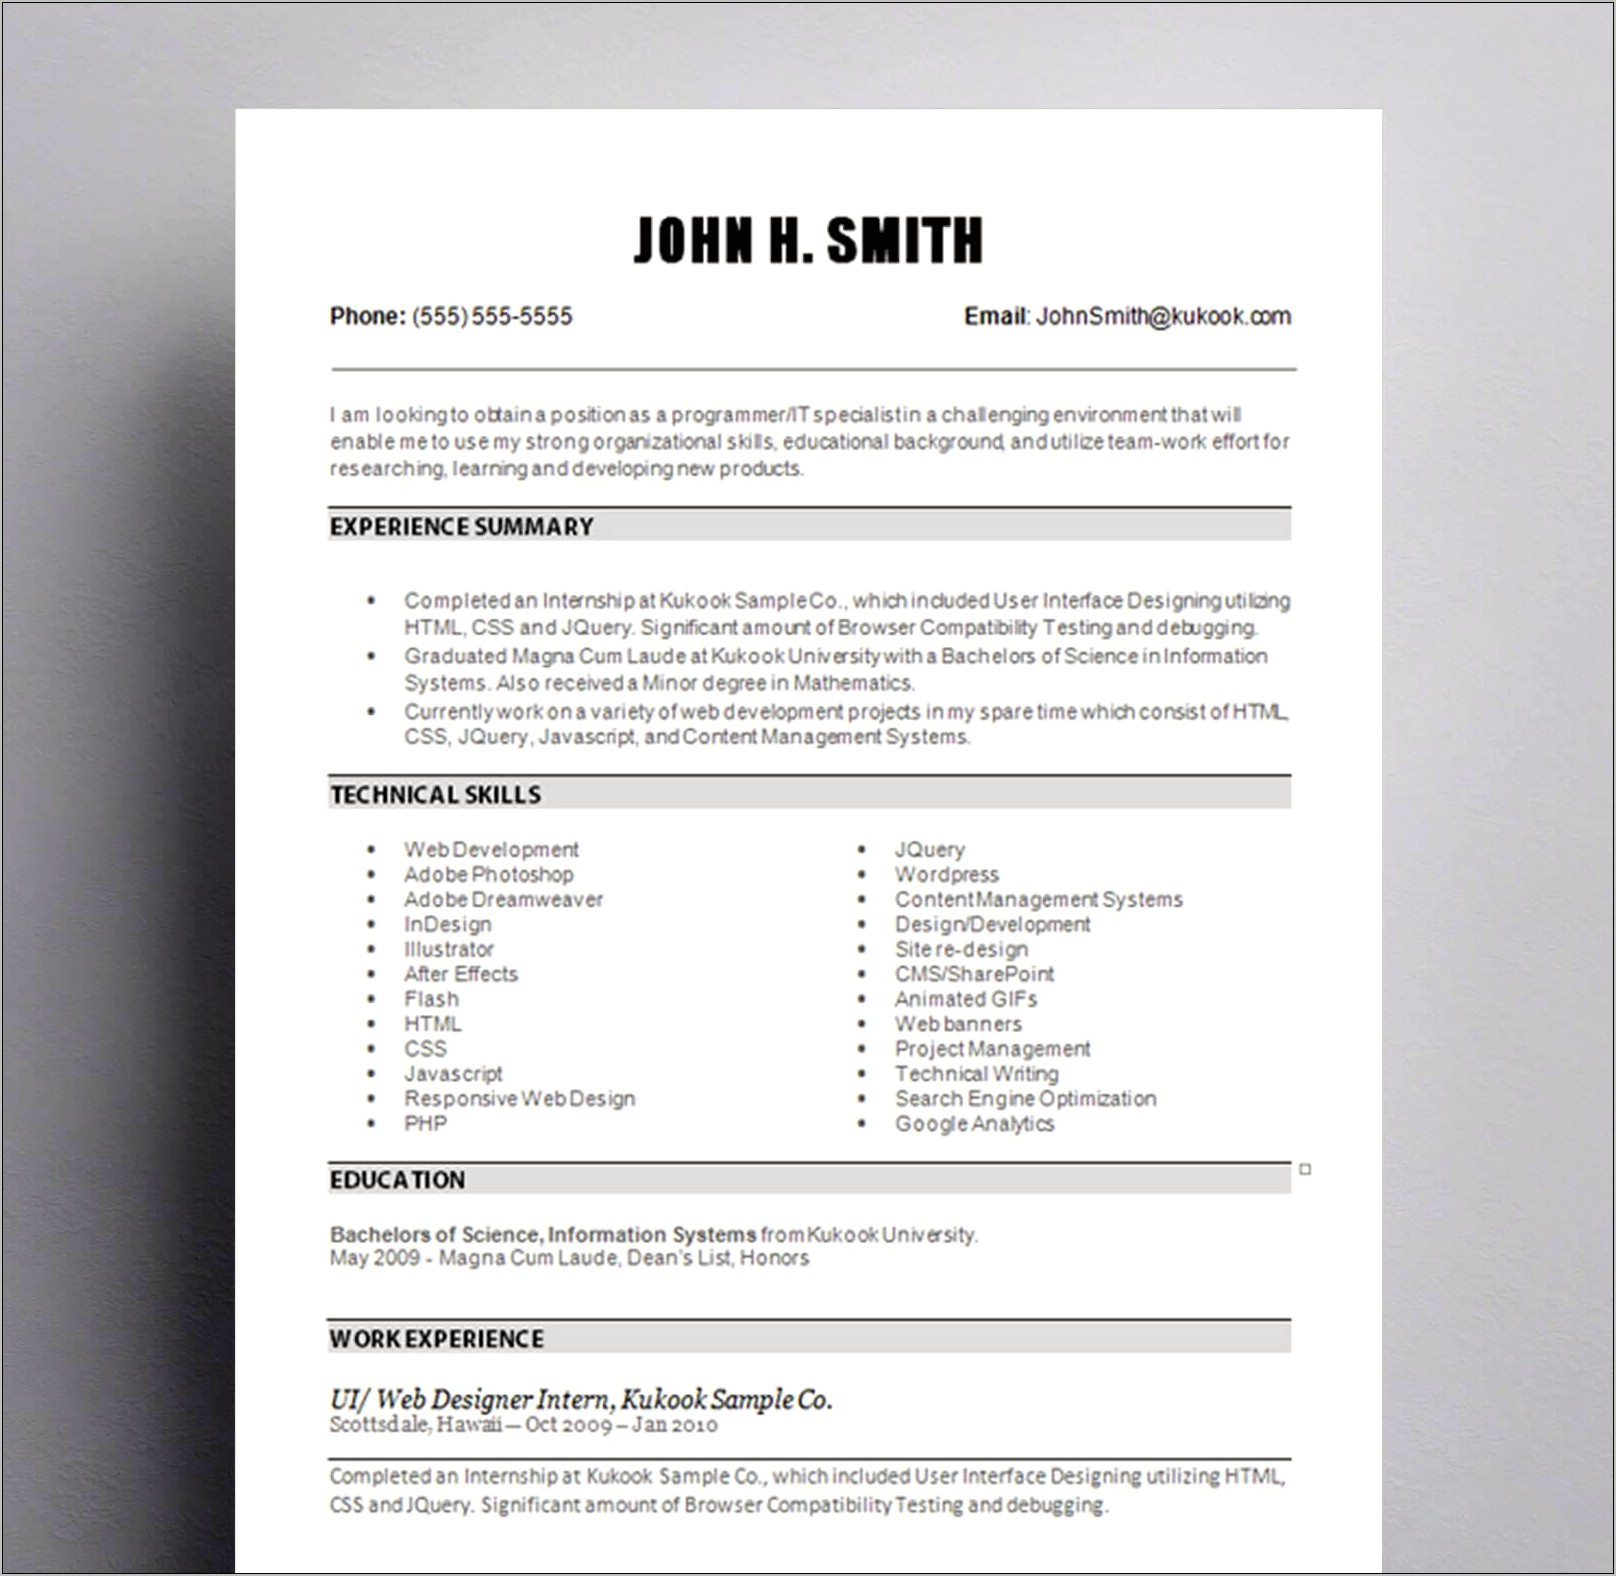 Resume Design For Entry Level Job